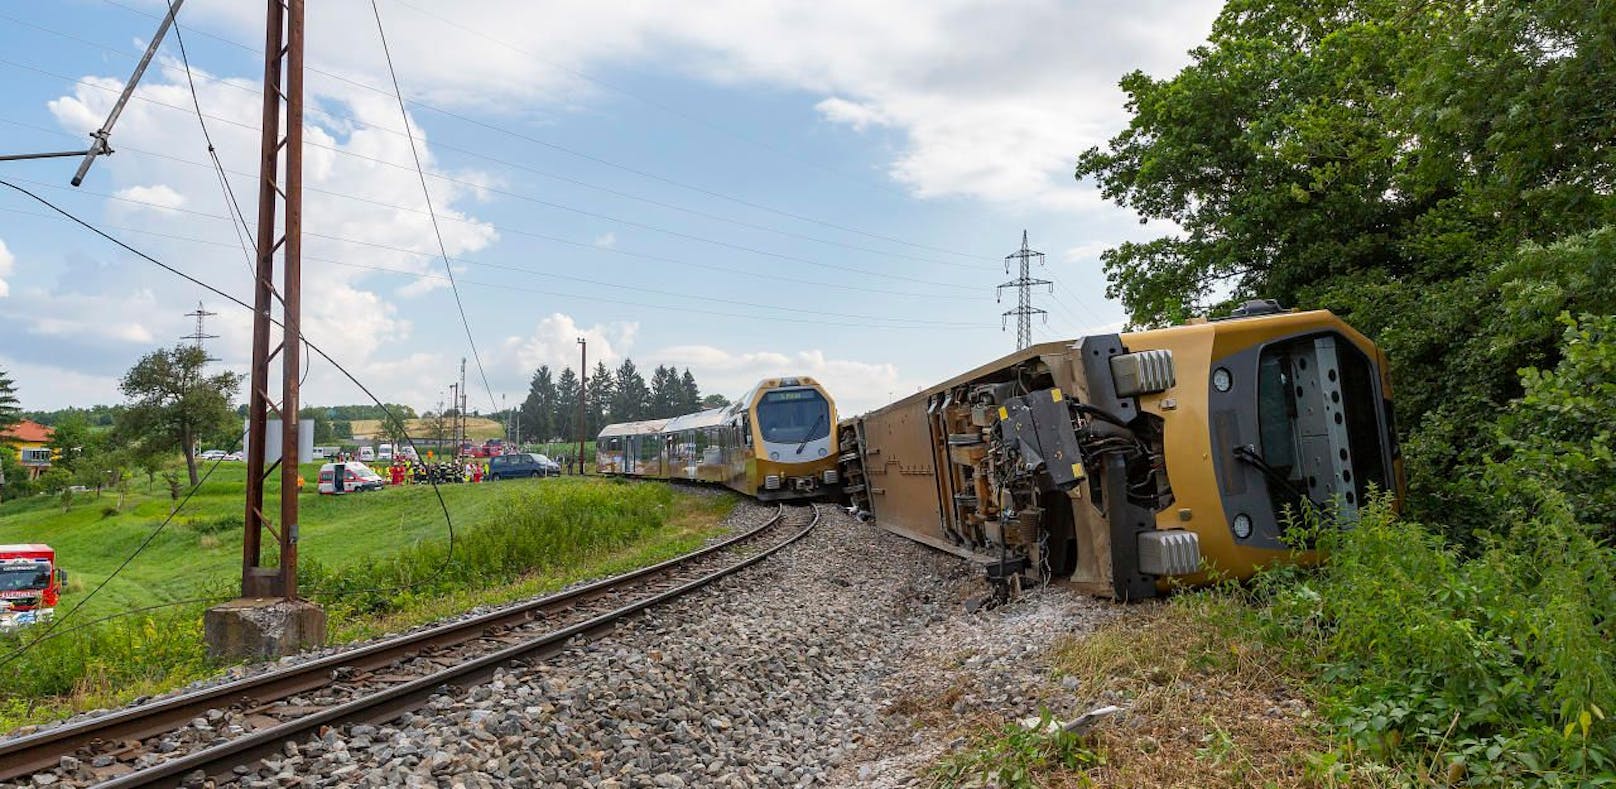 Zug-Crash: Unfallstelle geräumt, Millionenschaden